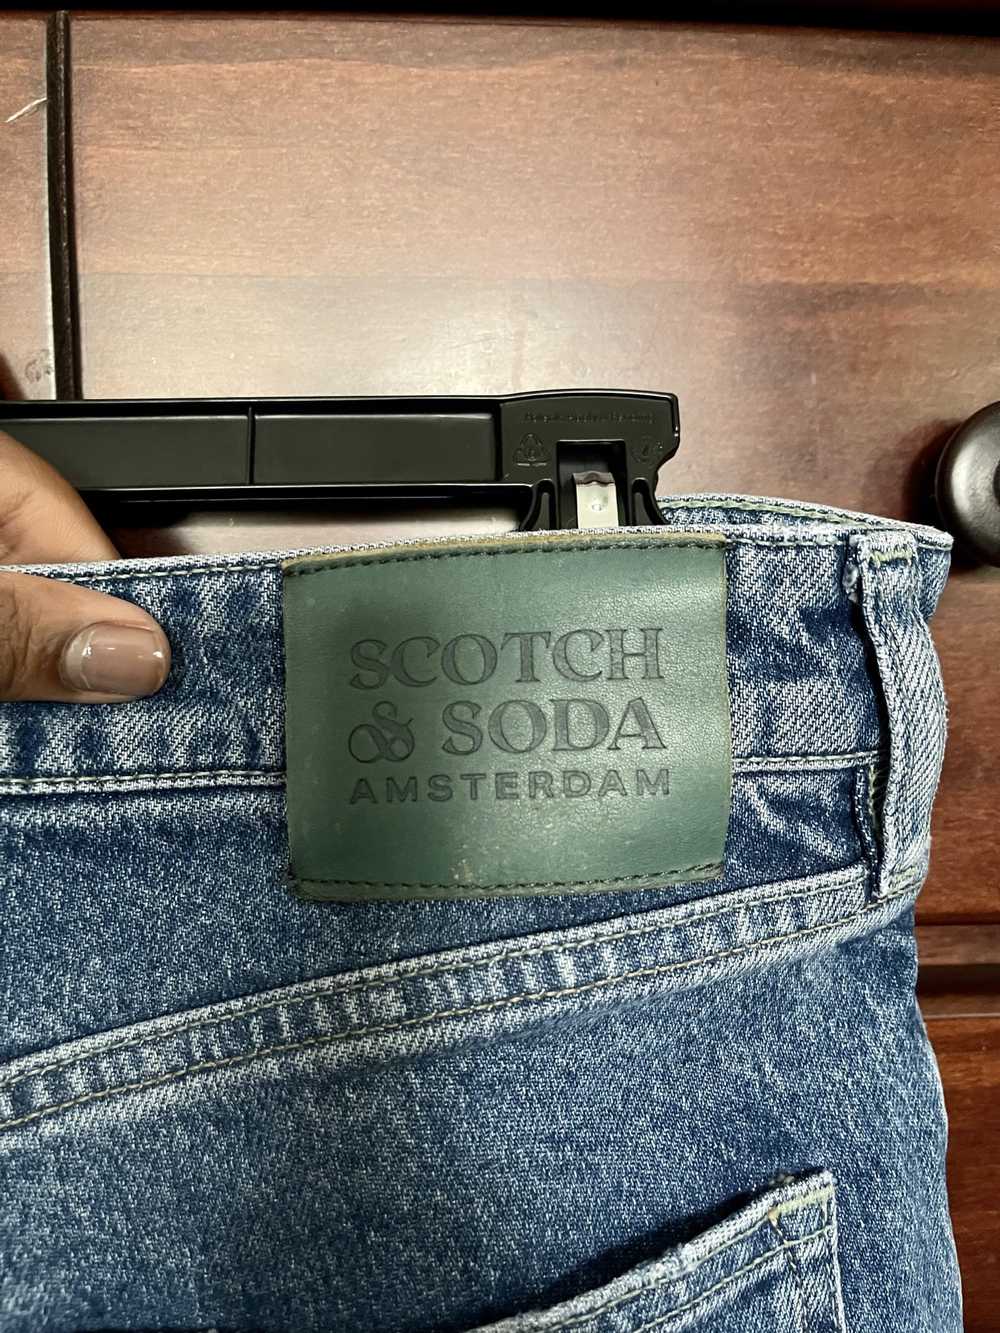 Scotch & Soda Scotch & Soda Denim Jeans - image 5